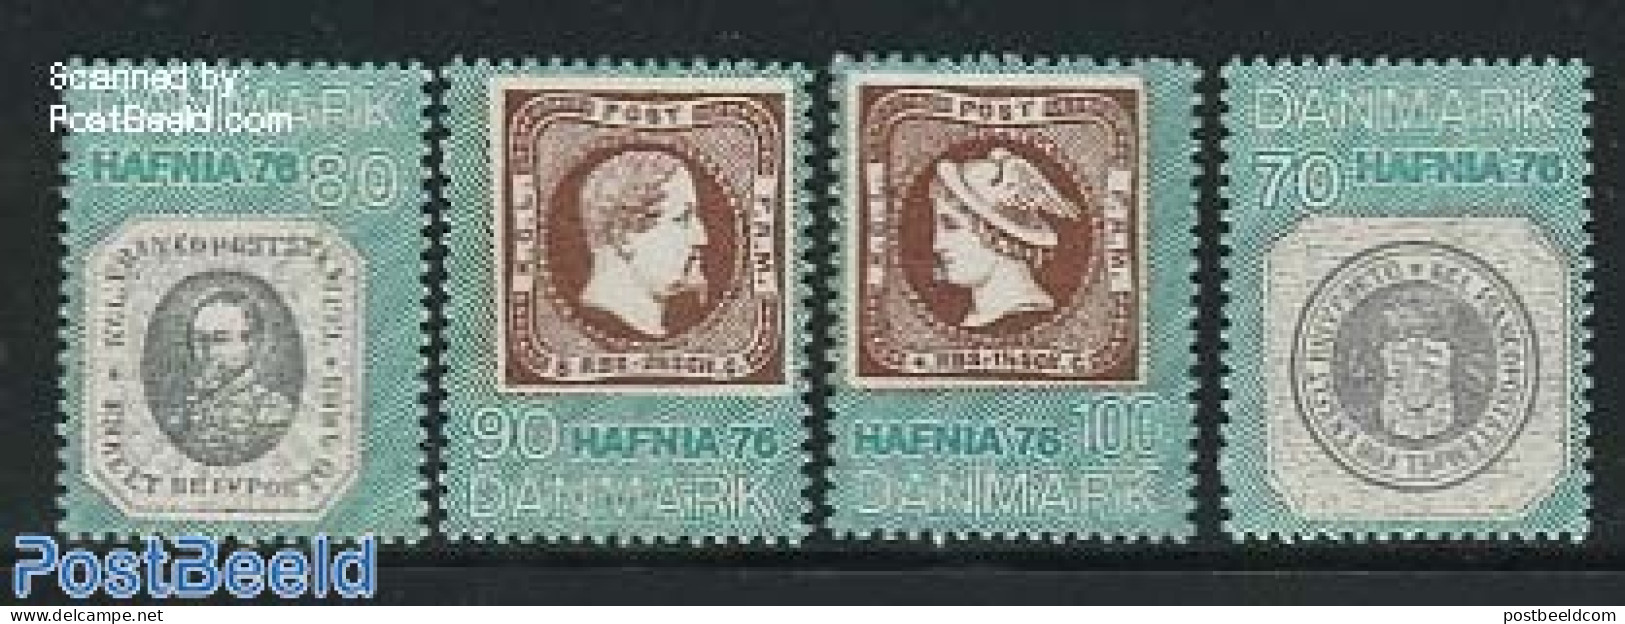 Denmark 1975 Hafnia 76 4v, Mint NH, Stamps On Stamps - Ongebruikt